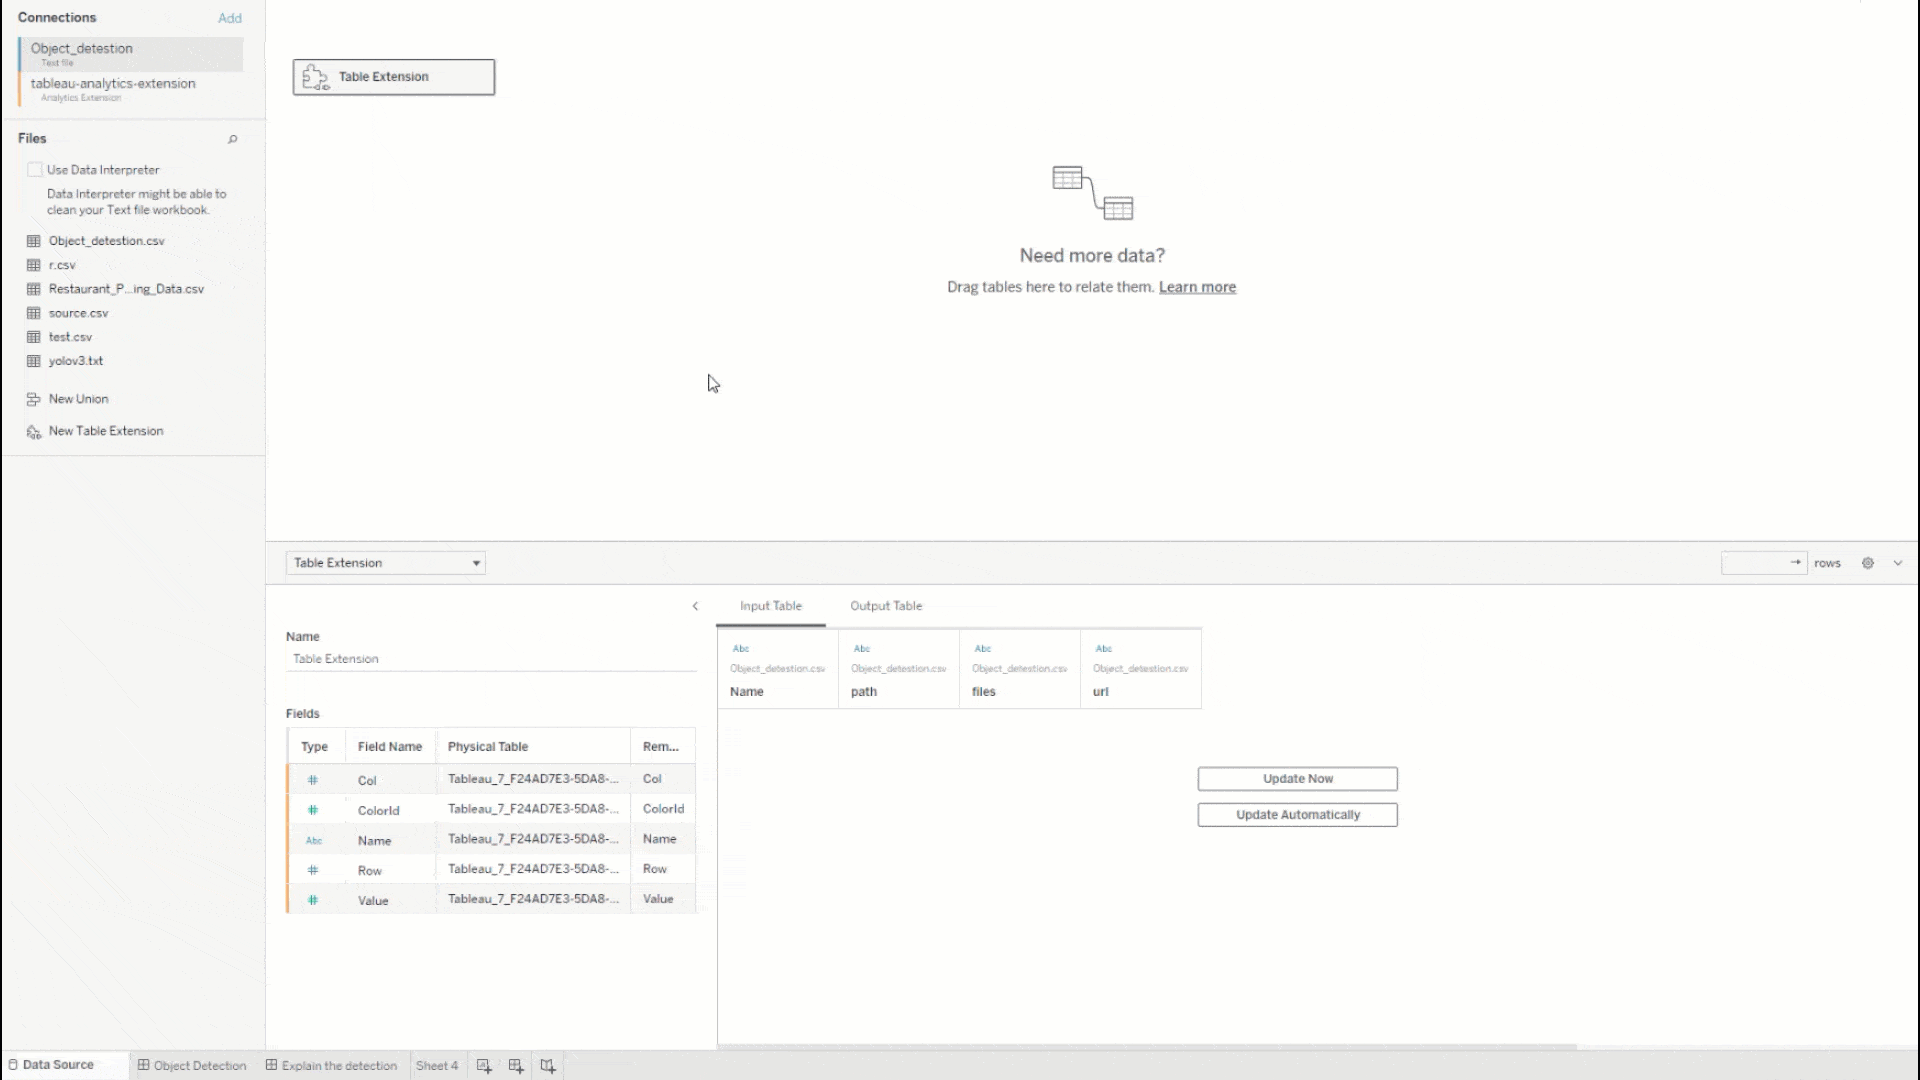 GIF animata dell'interfaccia di web authoring di Tableau che mostra l'utente mentre collega un'estensione di tabella tramite TabPy, produce una tabella di output e filtra le visualizzazioni utilizzando i dati di tale tabella.